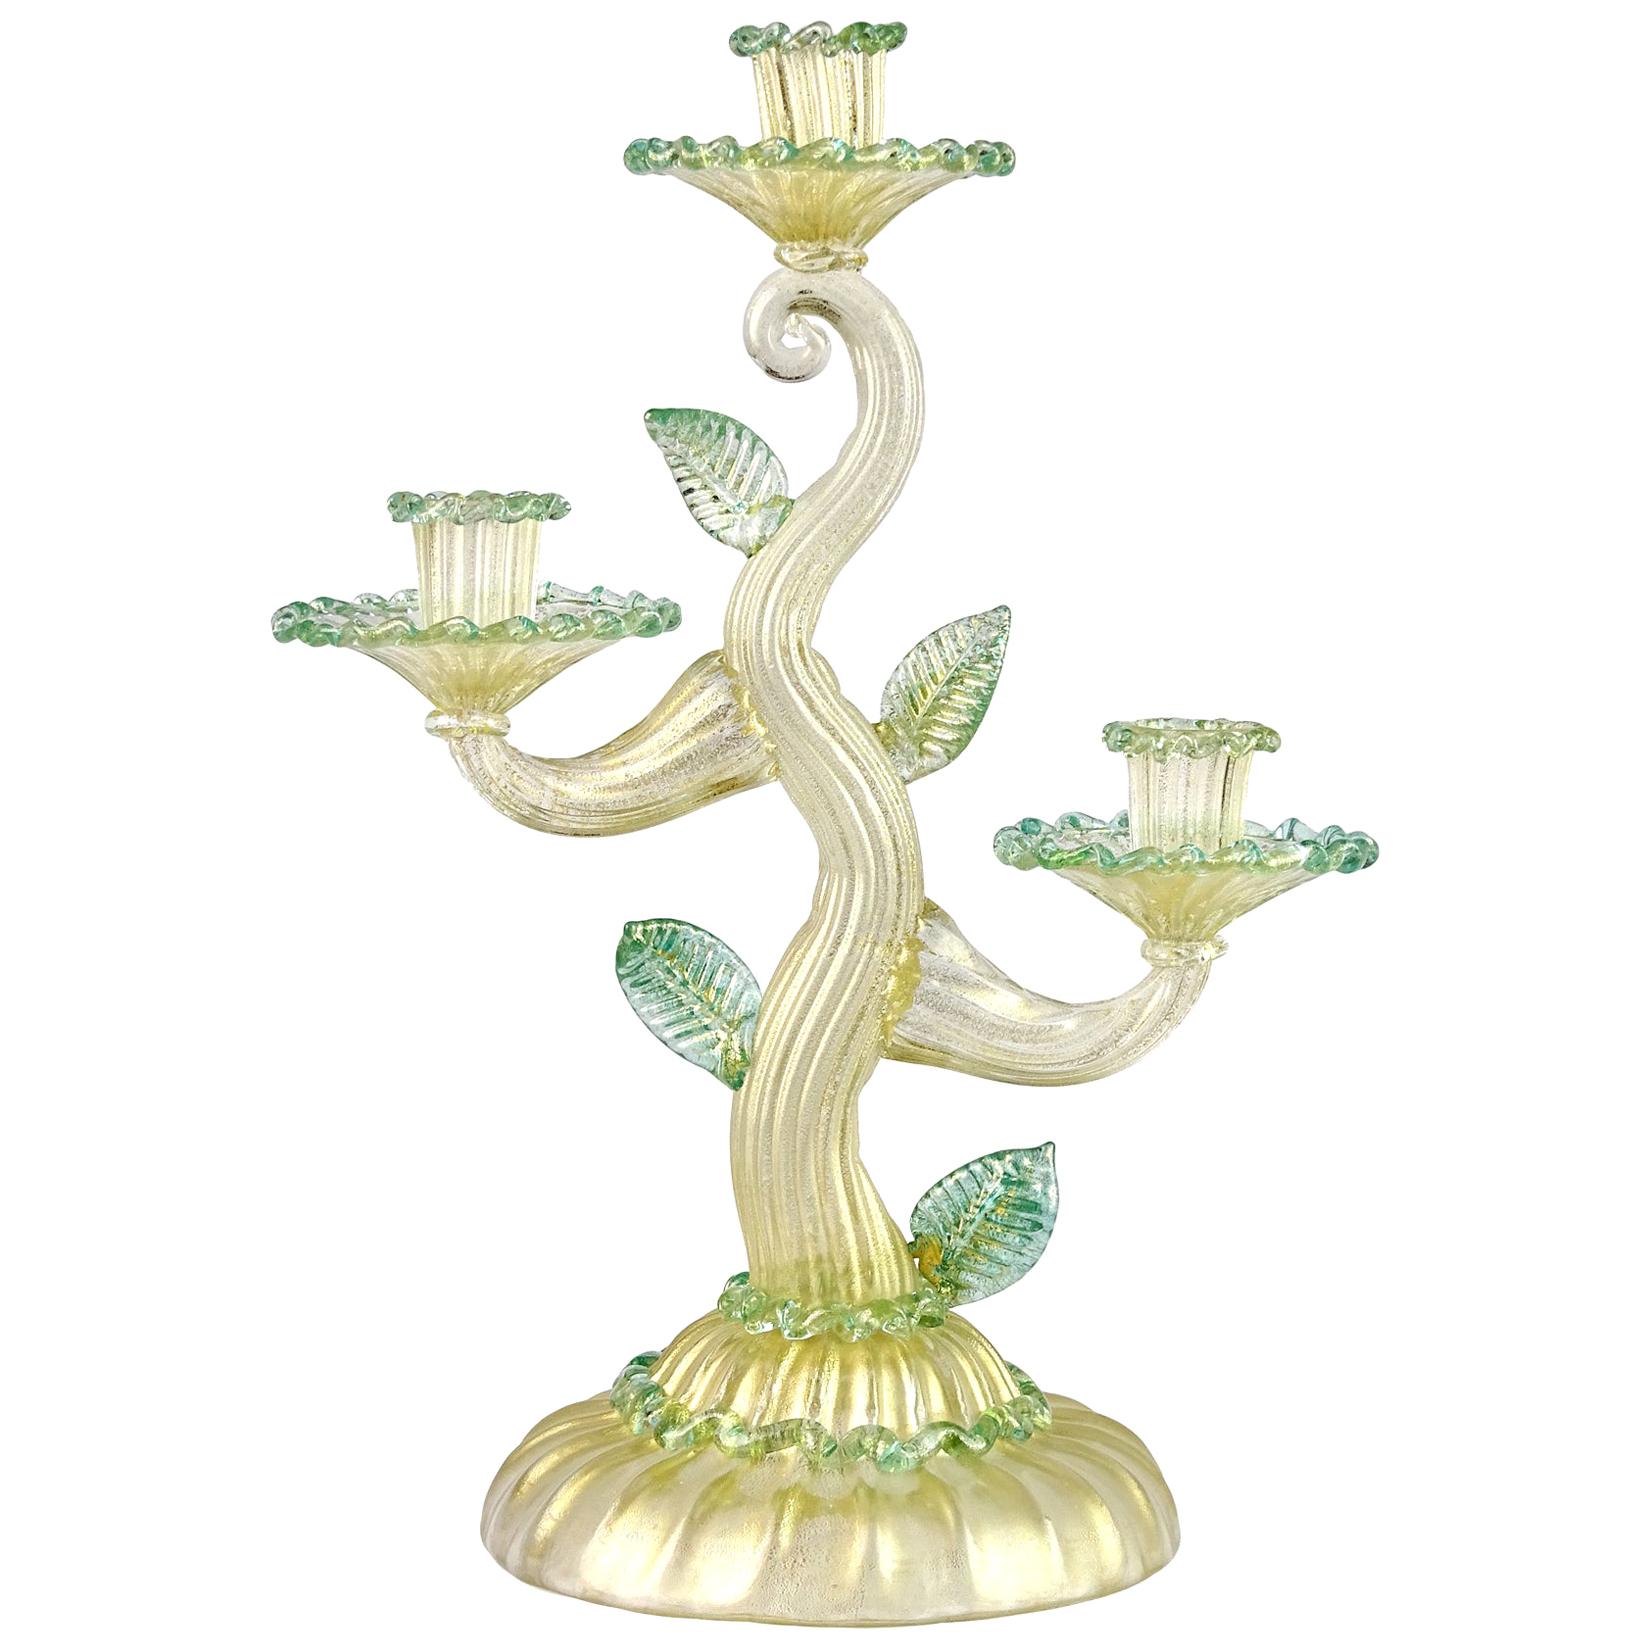 Barovier Toso Murano-Kerzenhalter aus grünem italienischem Kunstglas mit Goldflecken